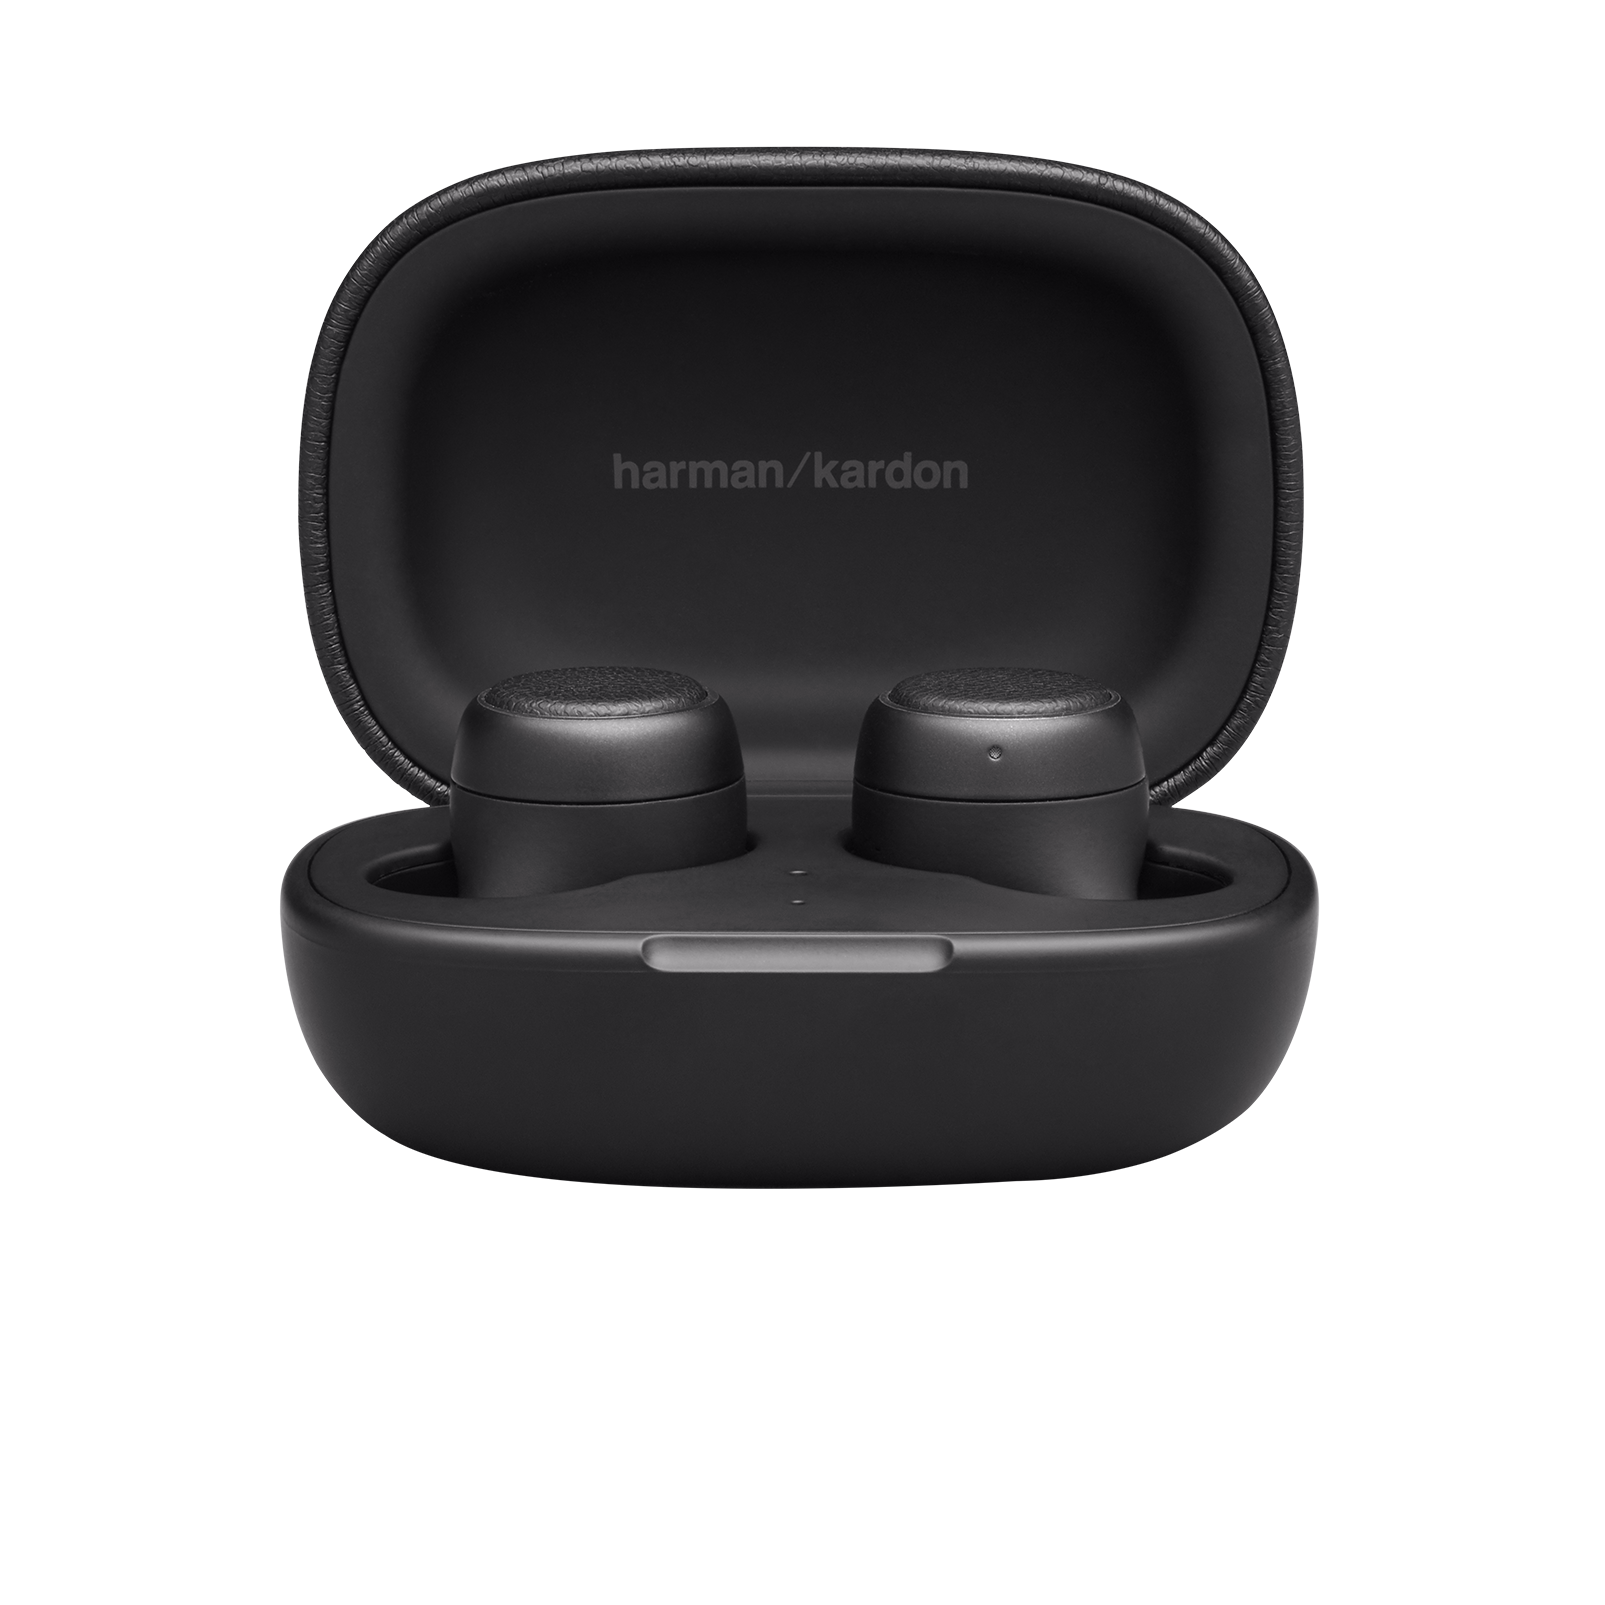 Harman Kardon FLY TWS - Black - True Wireless in-ear headphones - Detailshot 4